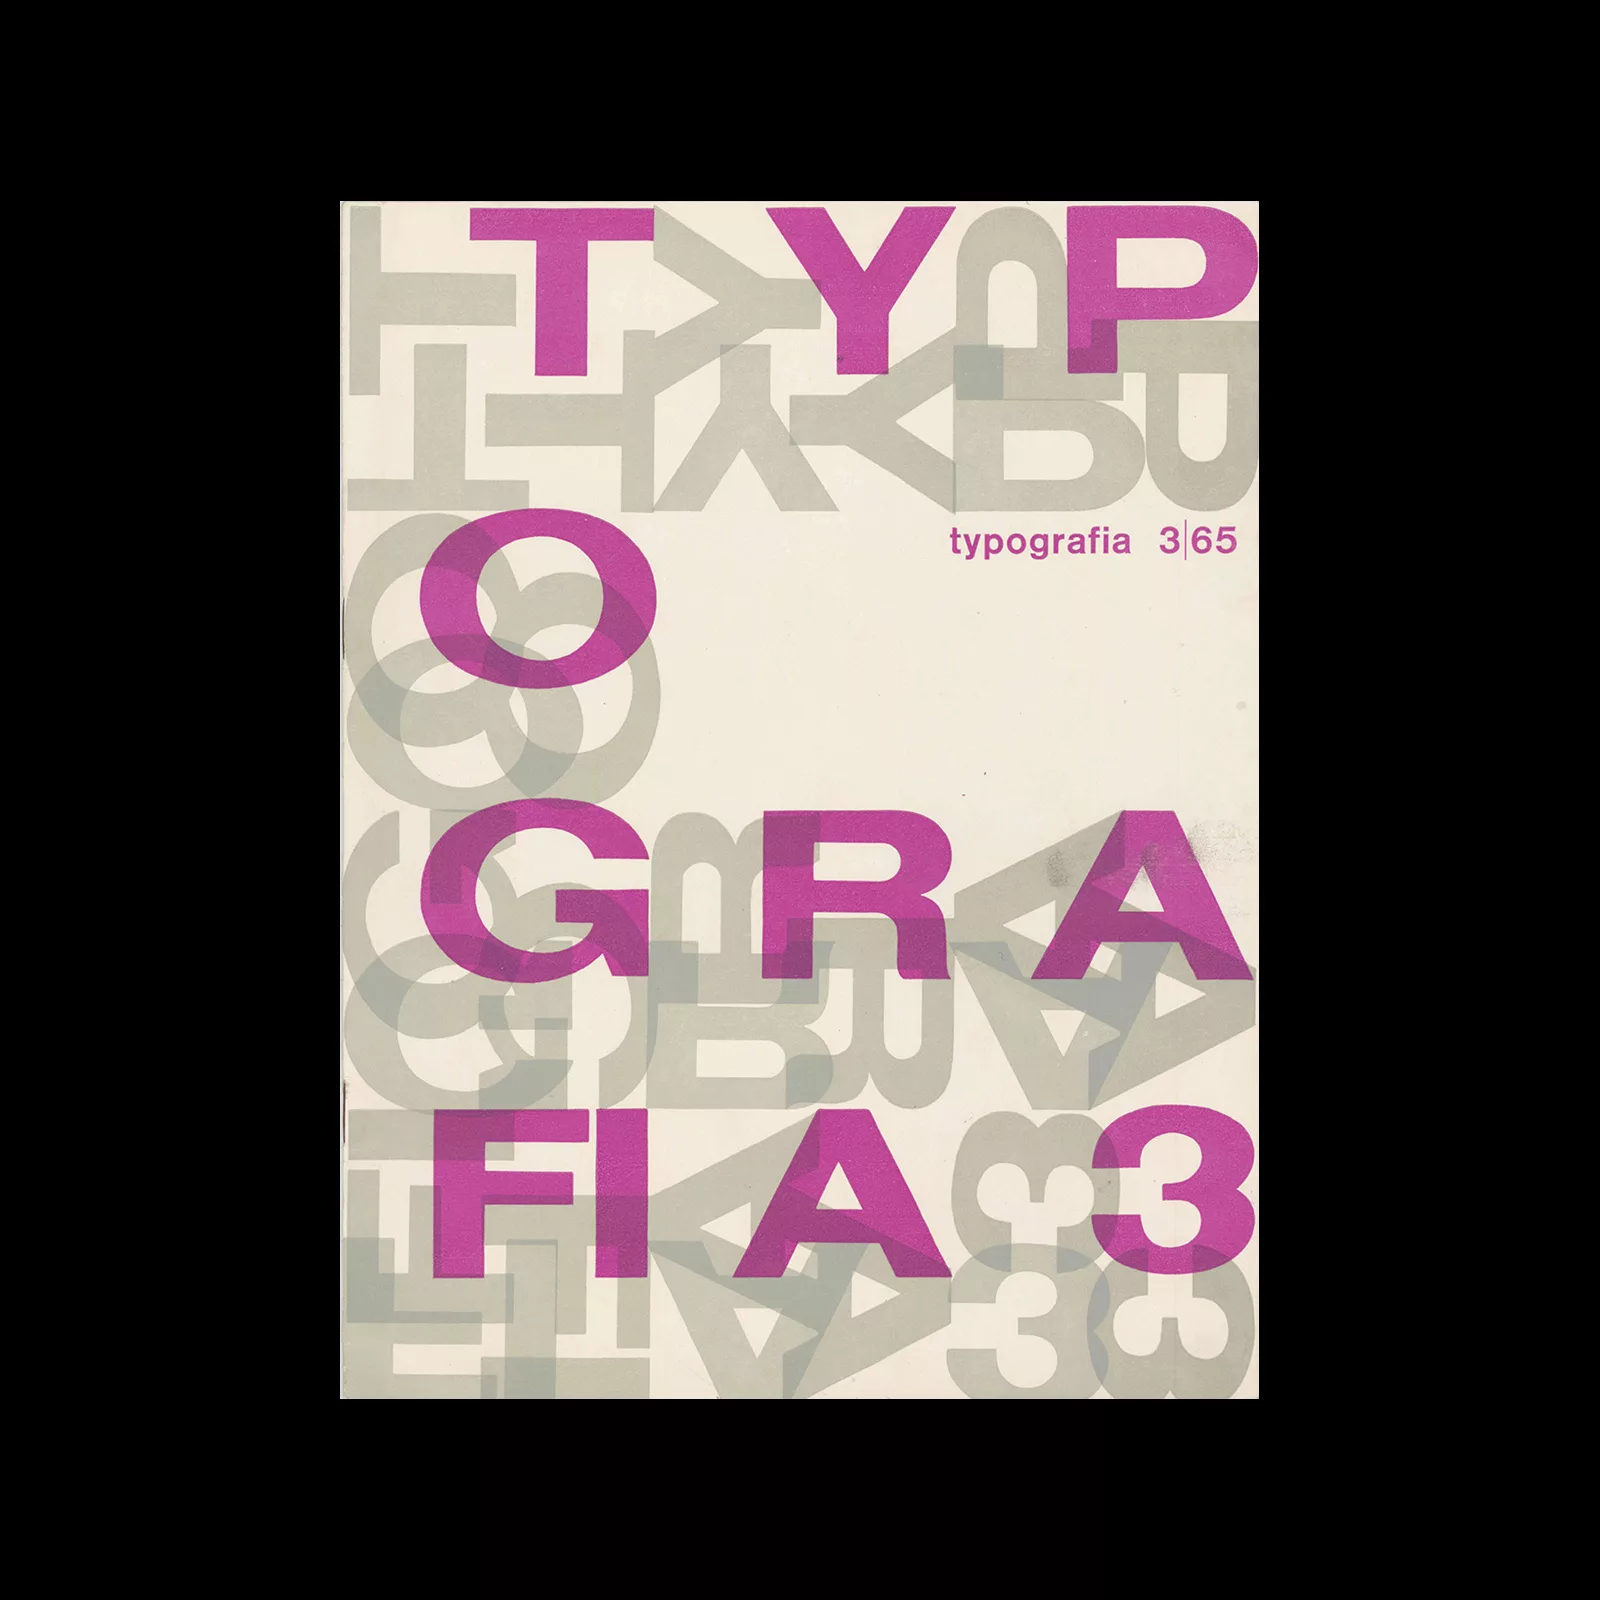 Typografia, ročník 68, 03, 1965. Cover design by Antonín Ernest